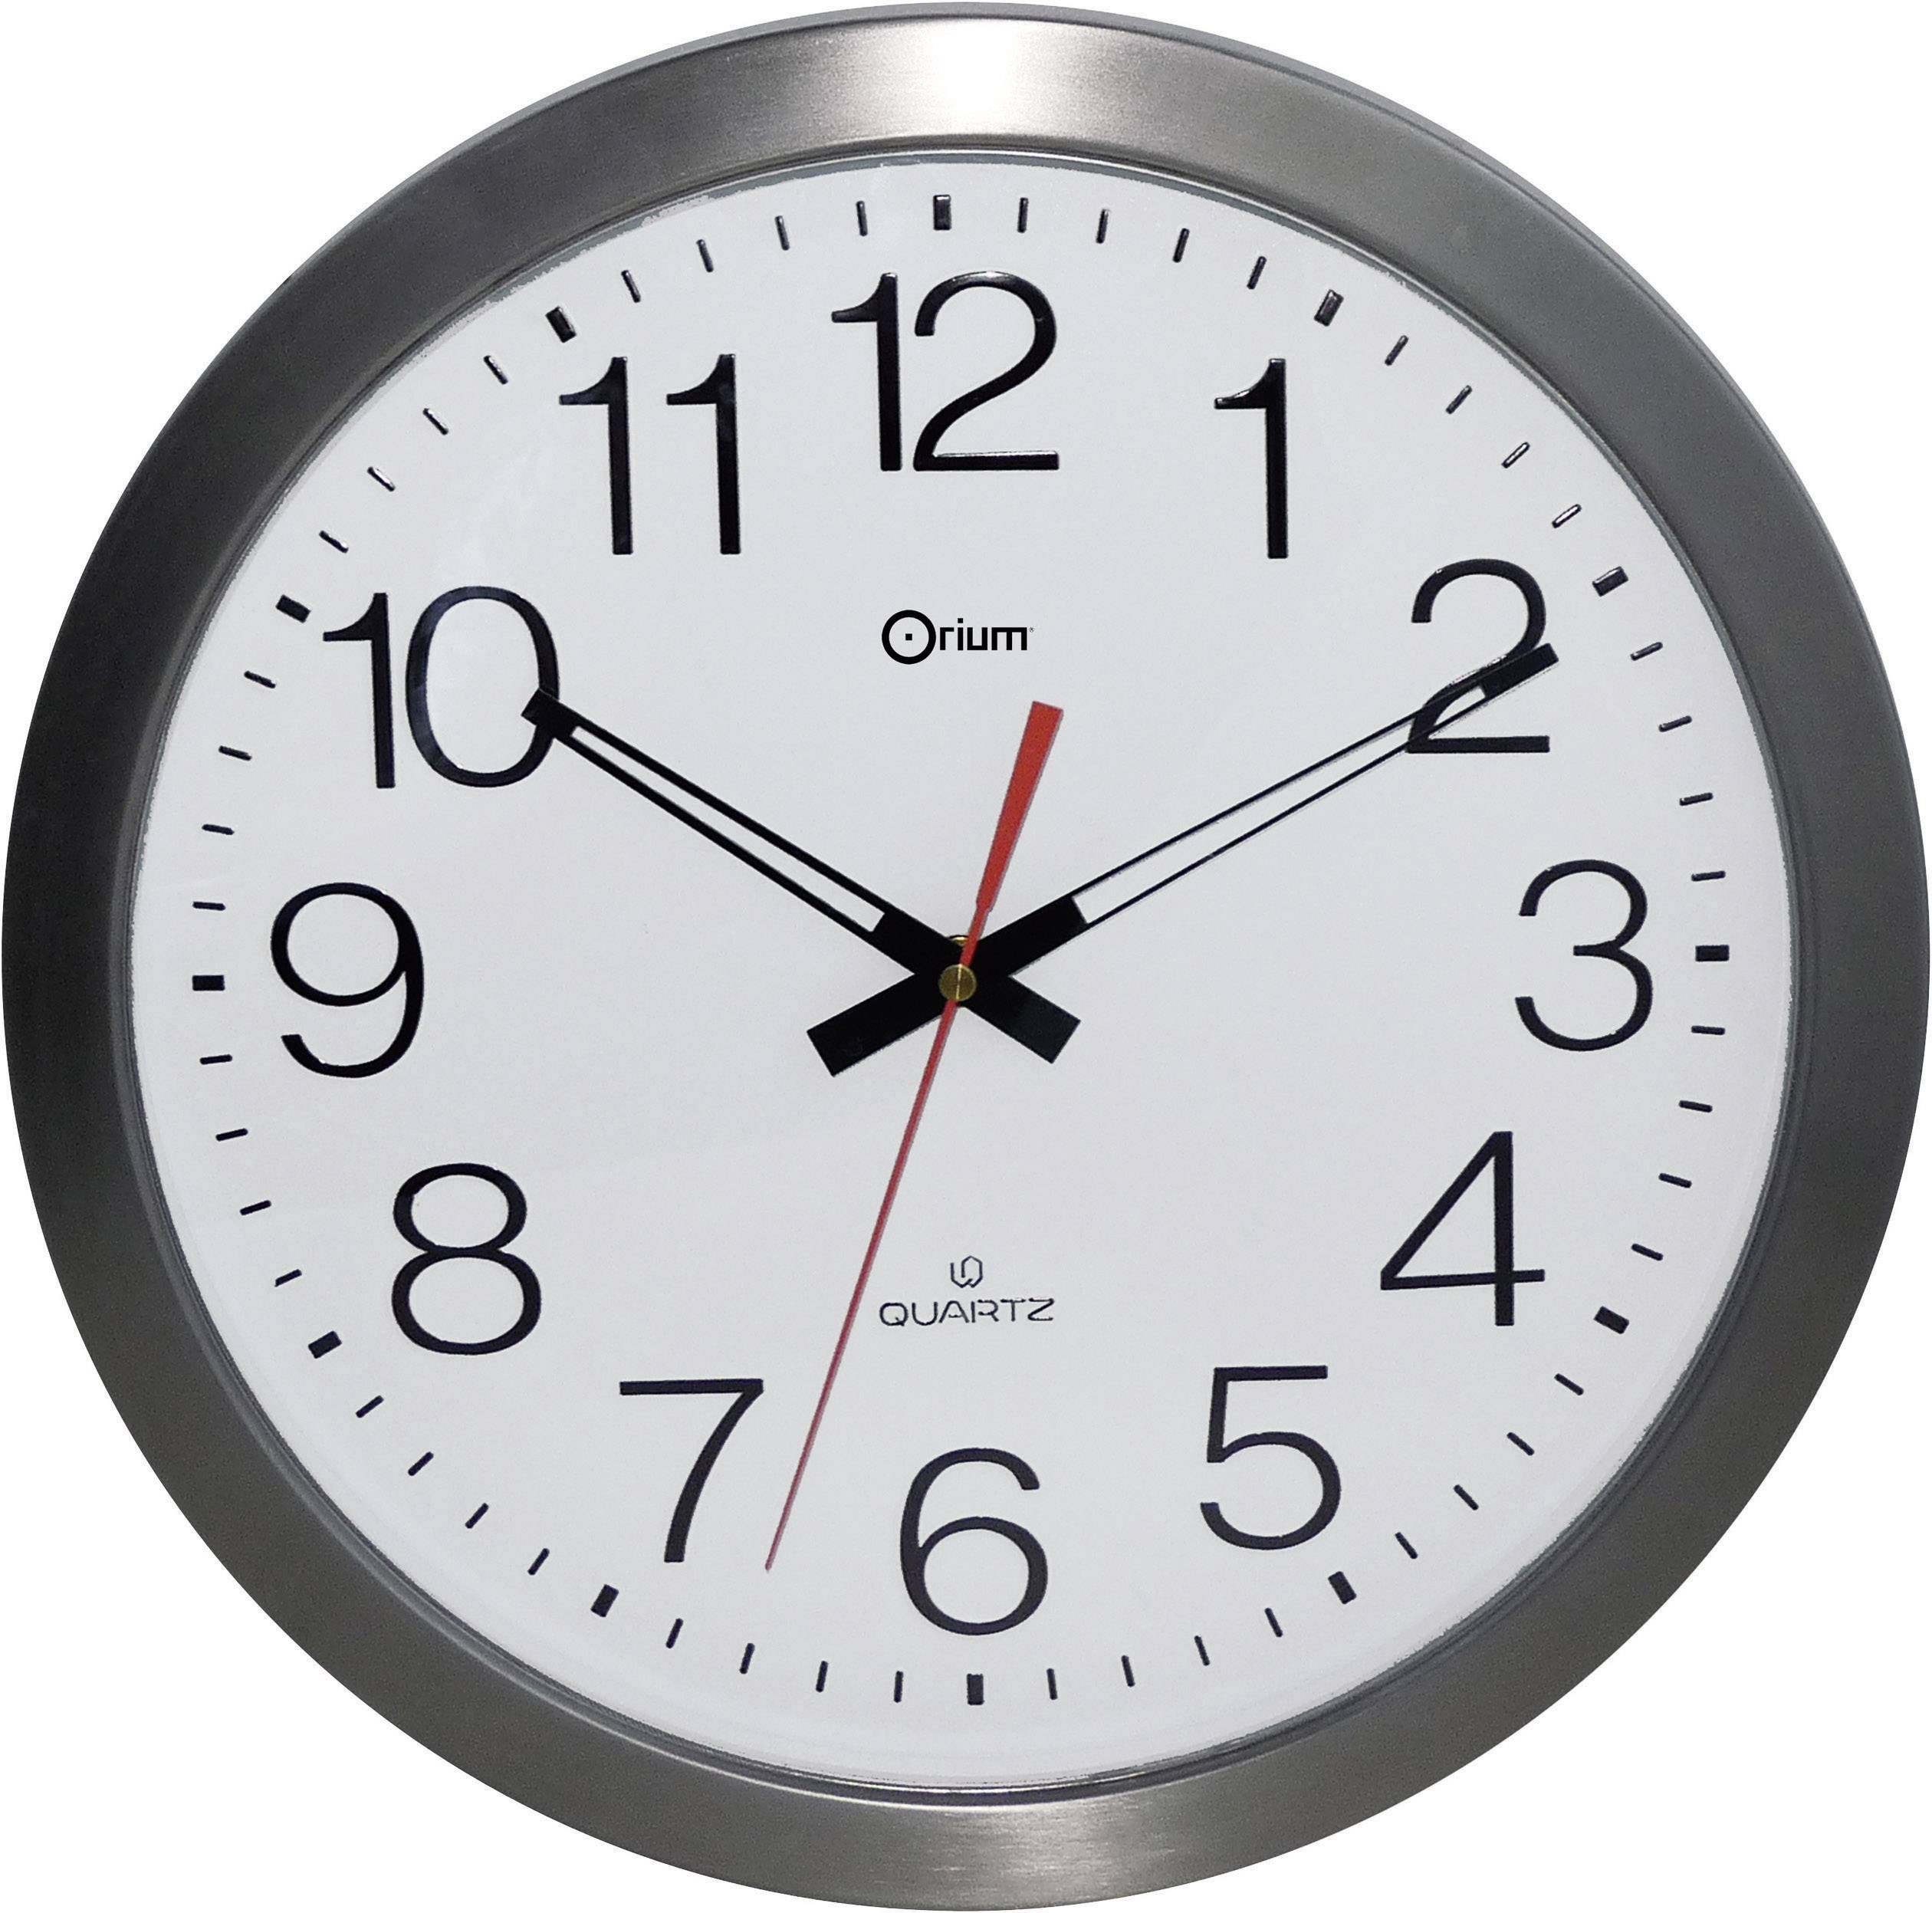  Reloj de Pared Impermeable metálico de Acero Inoxidable Orium 11385 35,5 x 35,5 x 4,5 cm 